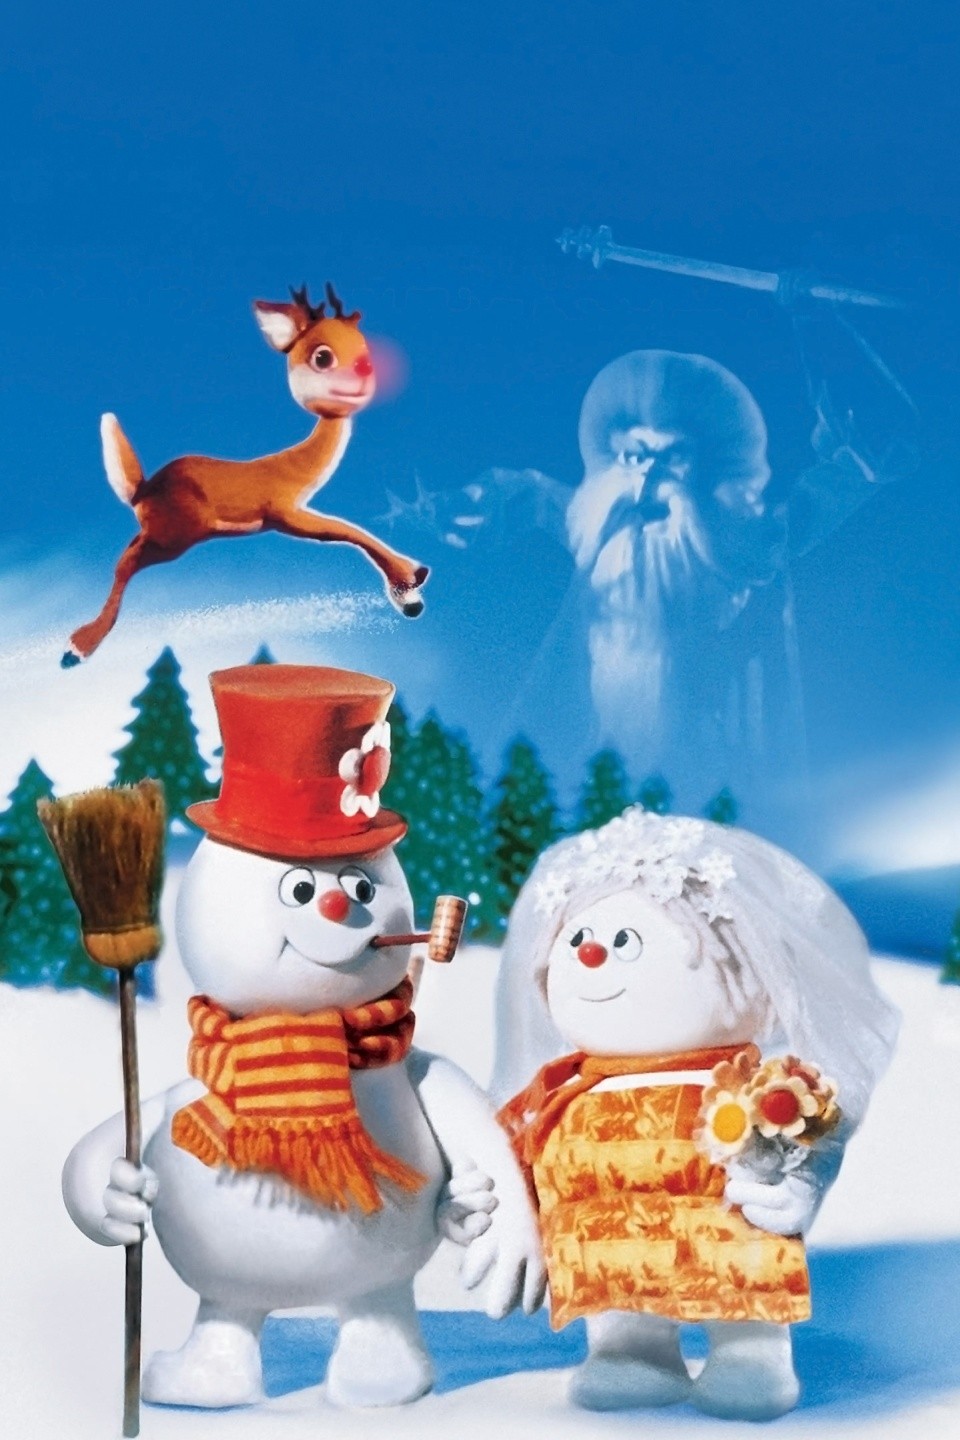 FrostyMovie – Frosty's